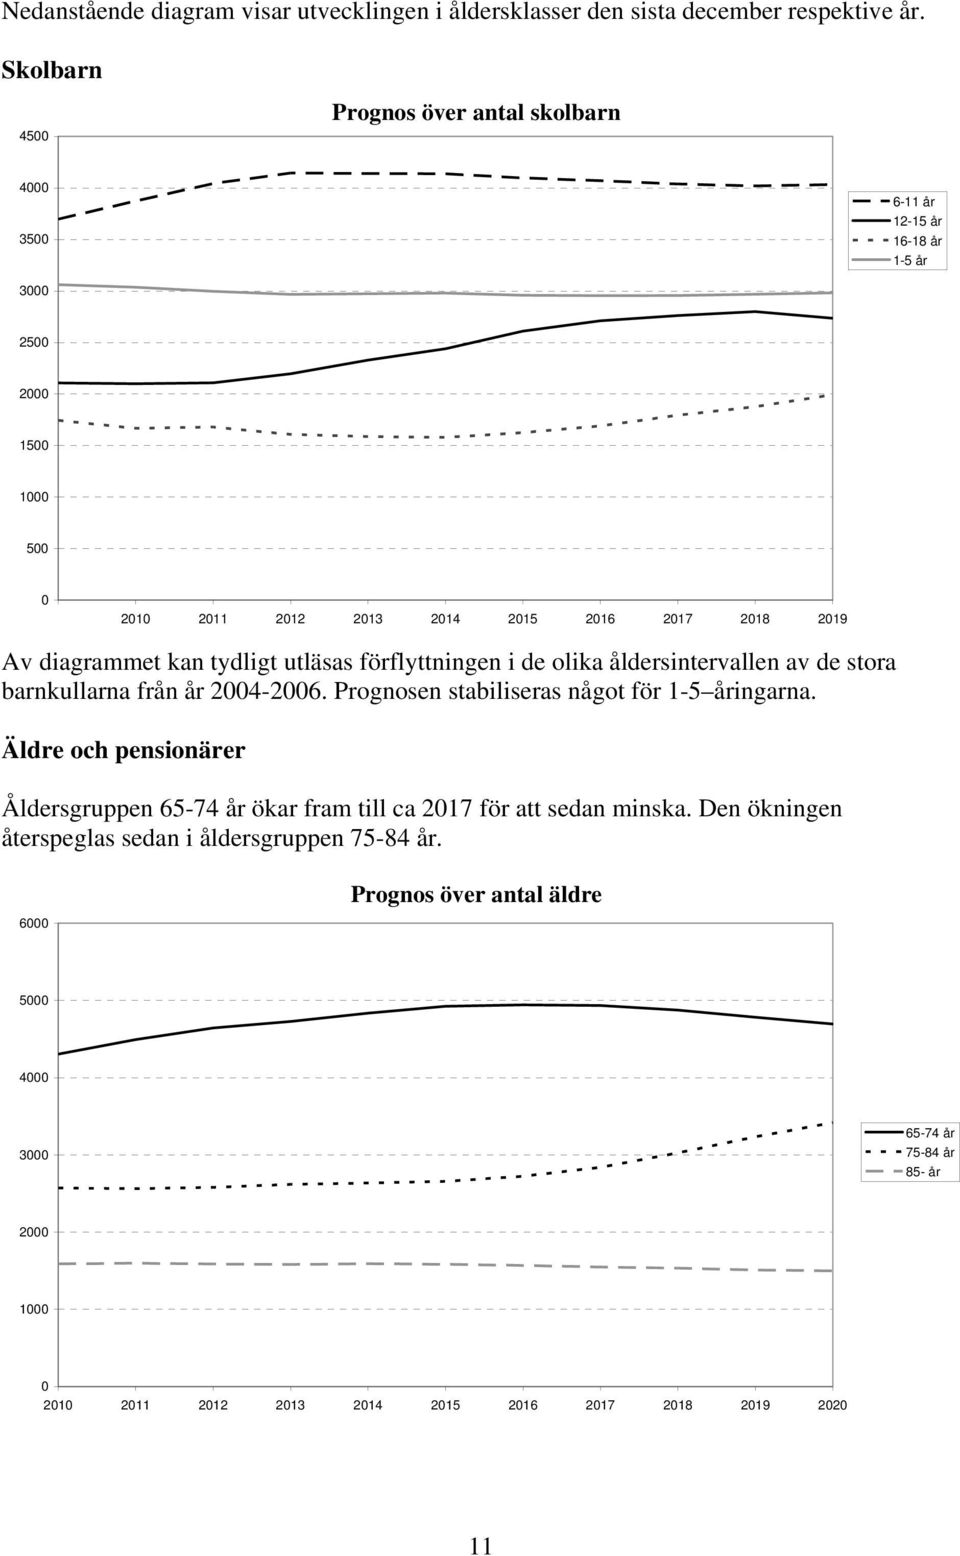 diagrammet kan tydligt utläsas förflyttningen i de olika åldersintervallen av de stora barnkullarna från år 2004-2006. Prognosen stabiliseras något för 1-5 åringarna.